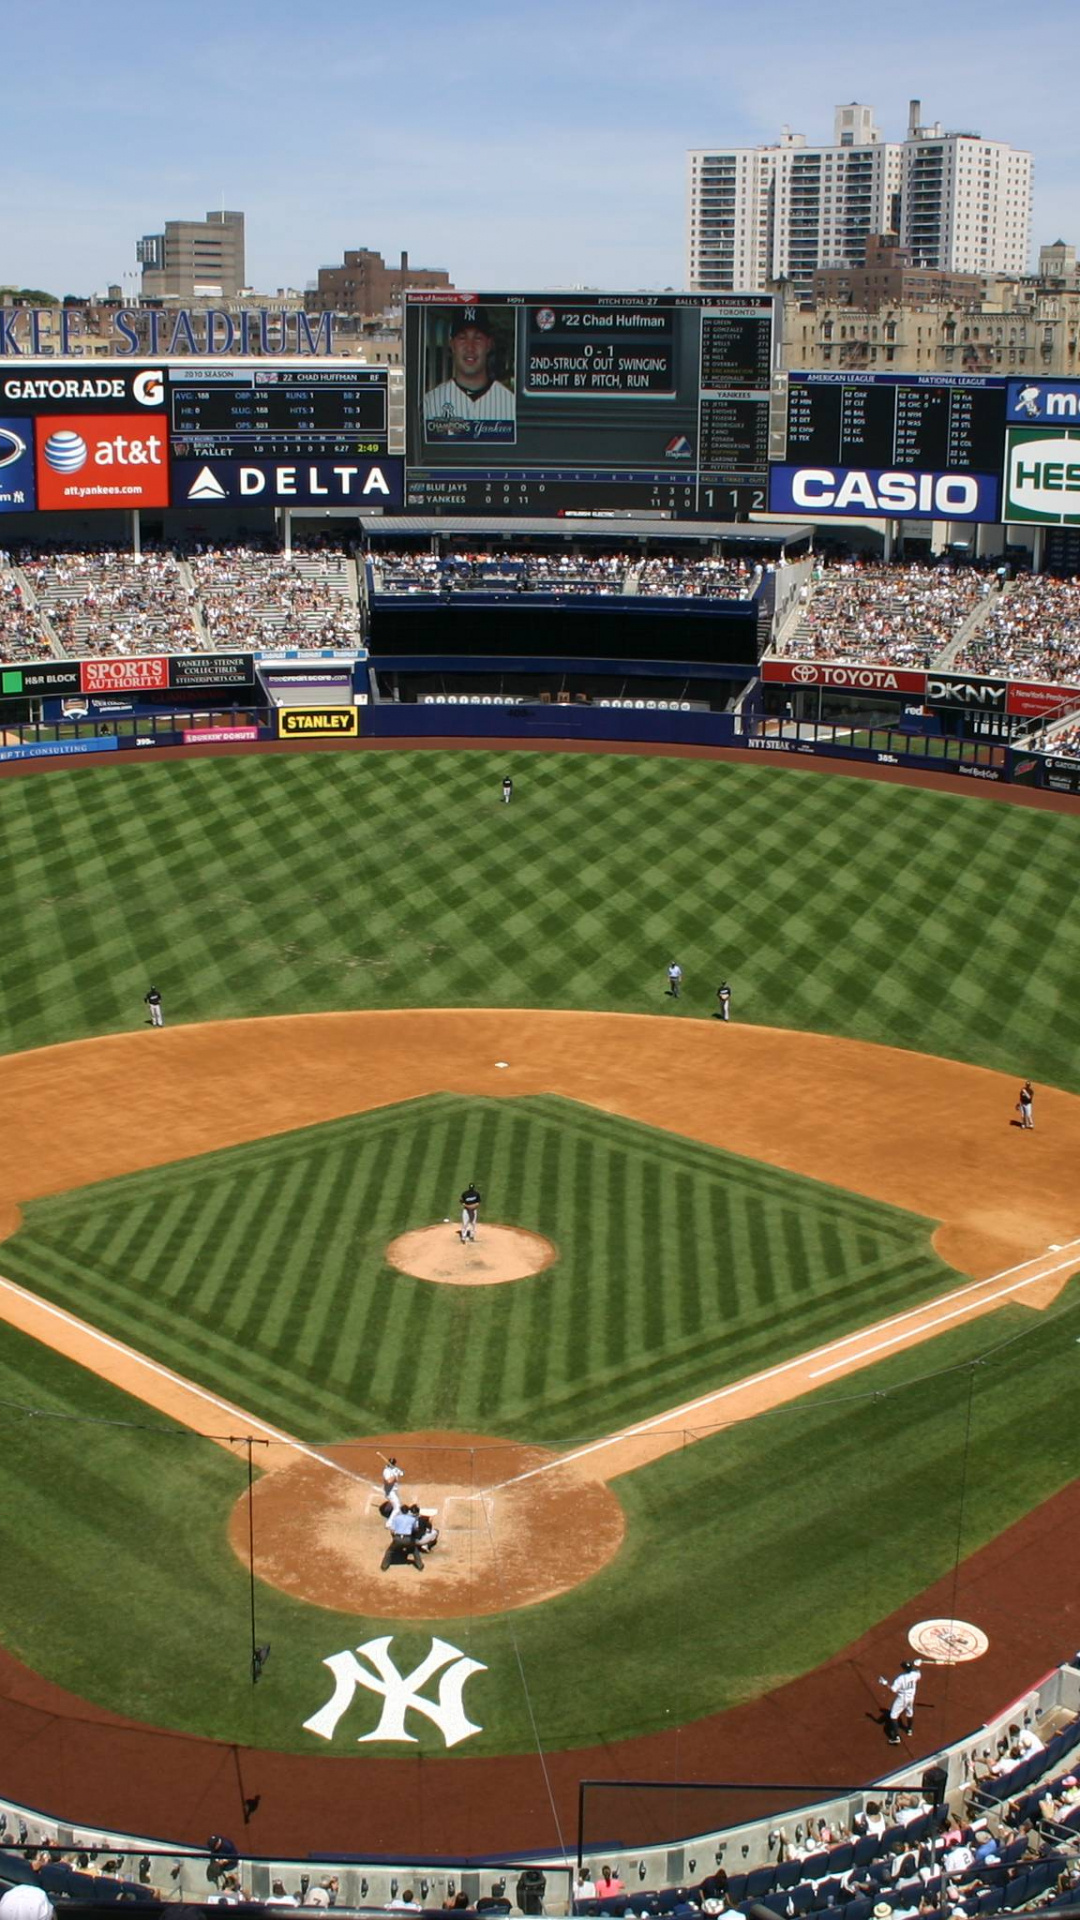 New York Yankees: Yankee Stadium, Opened in April 2009. 1080x1920 Full HD Wallpaper.